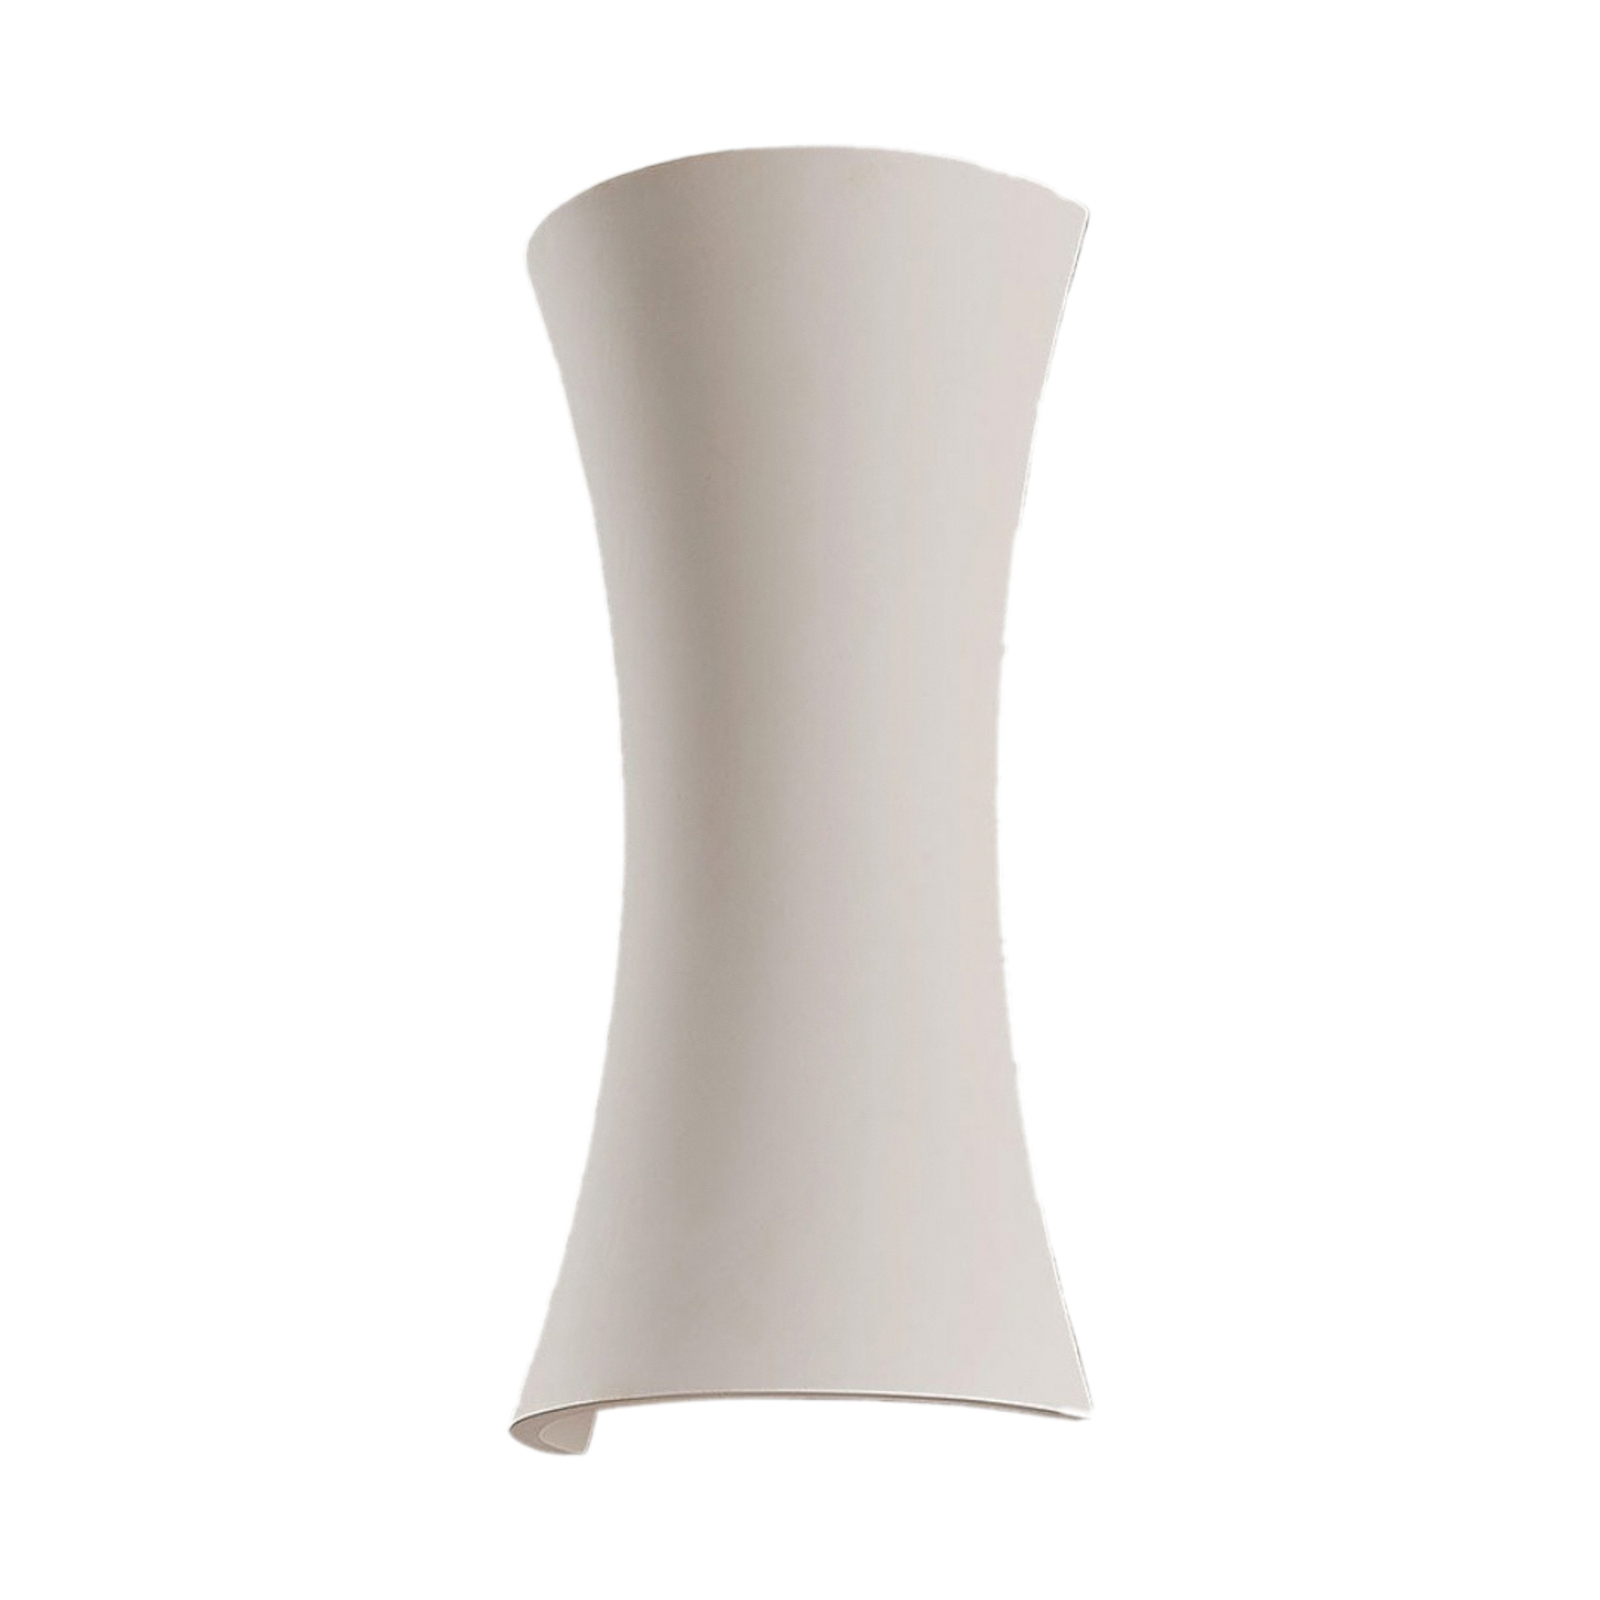 Edon aplică gips în alb, formă concavă, 30 cm